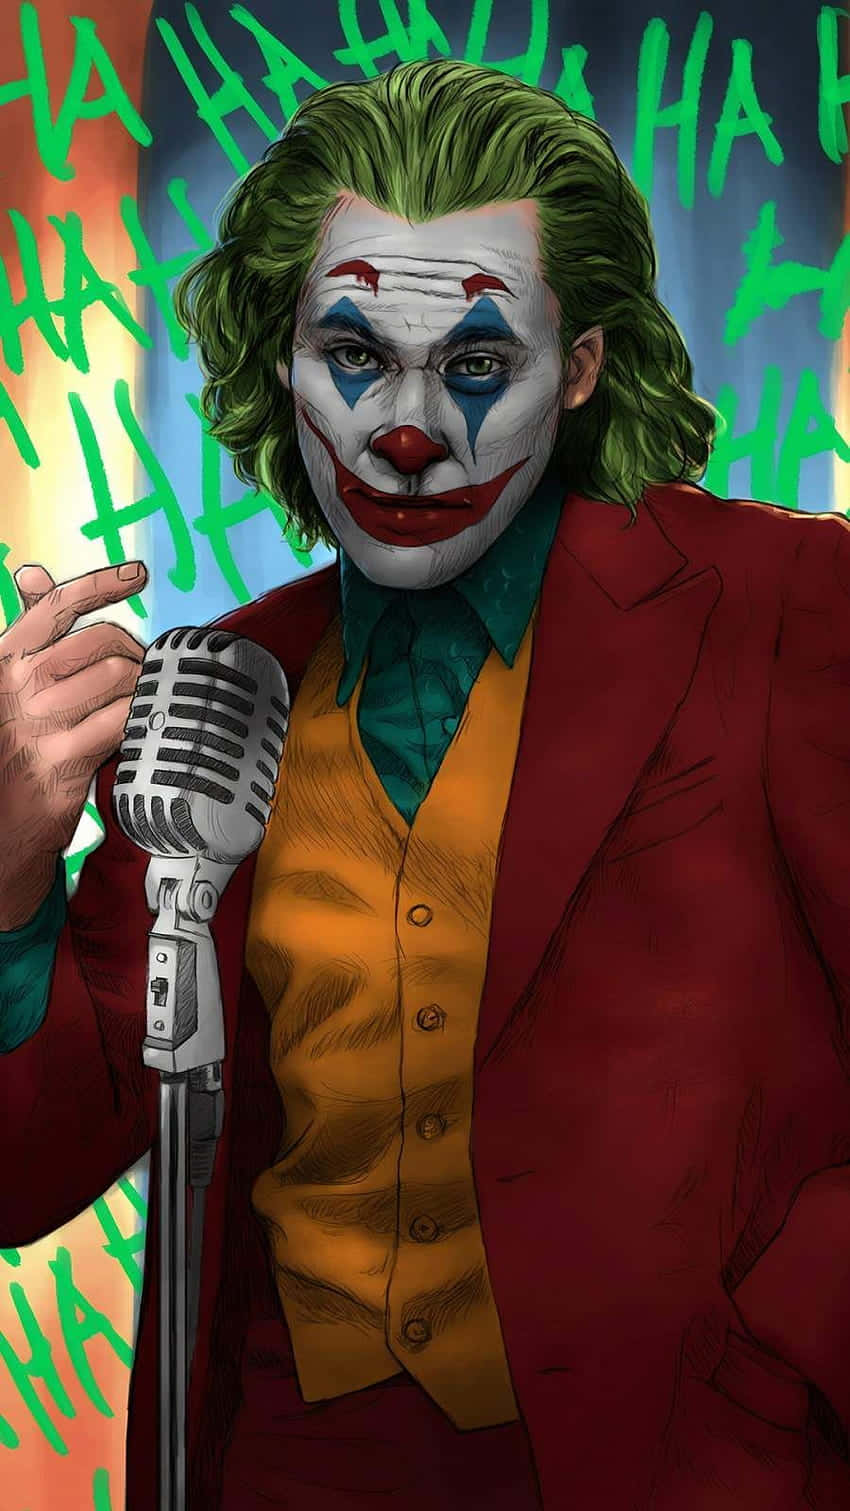 Intense Arthur Fleck in Joker Makeup Wallpaper